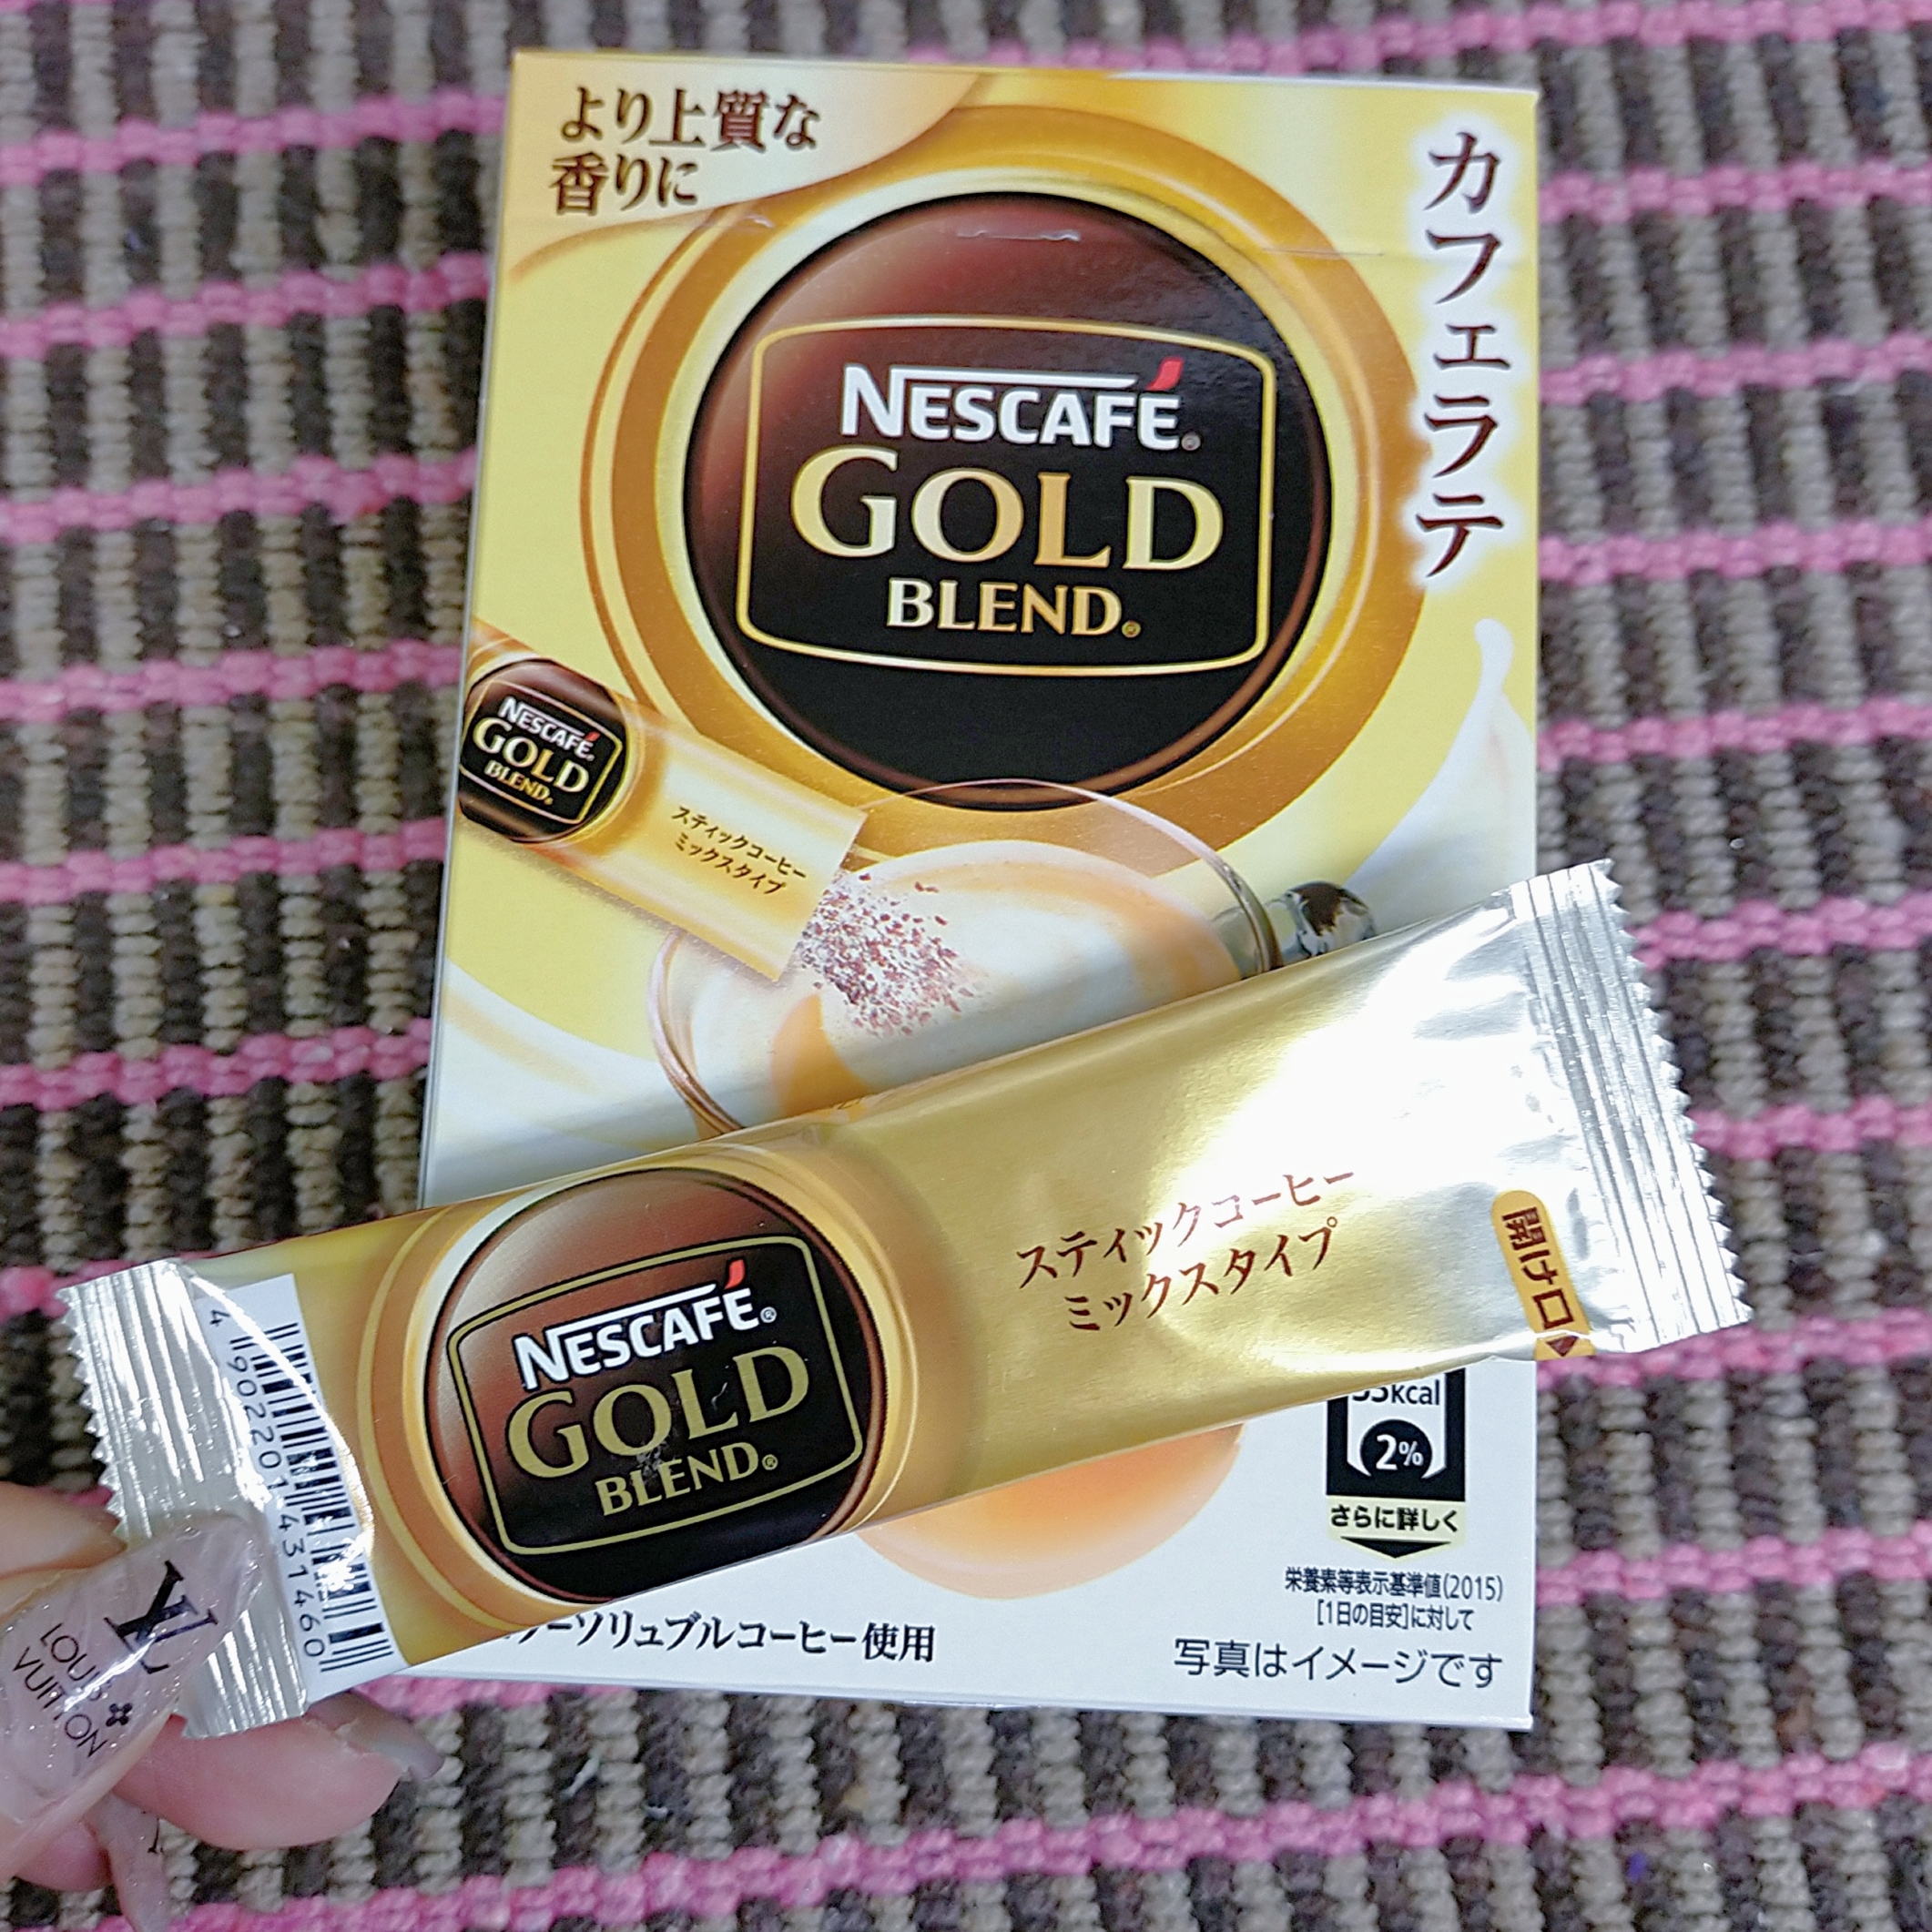 Nestle(ネスレ) ネスカフェ ゴールドブレンド スティックコーヒーの良い点・メリットに関するみこさんの口コミ画像1